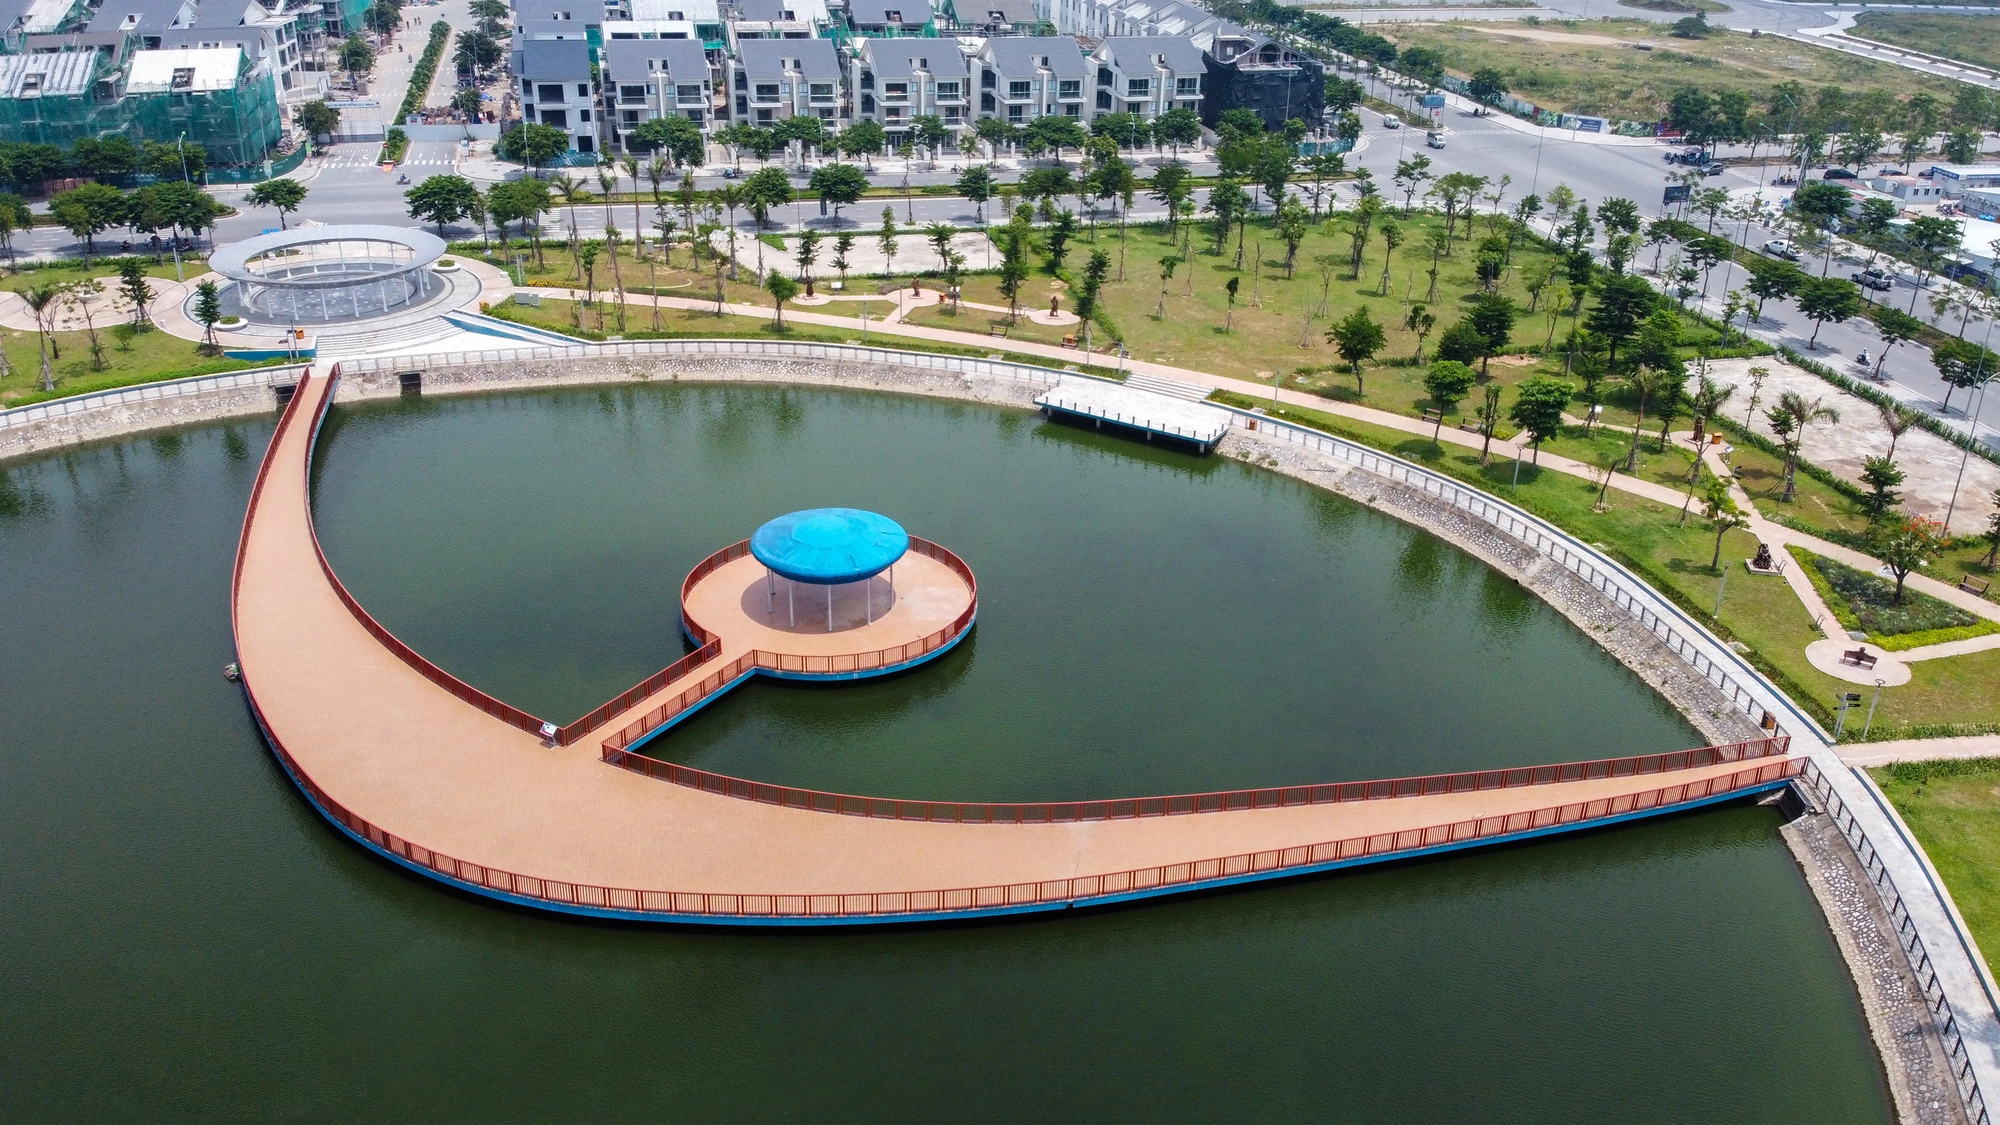 Công viên 260 tỷ chủ đề thiên văn học bỏ hoang sau 2 năm hoàn thành ở Hà Nội - Ảnh 2.